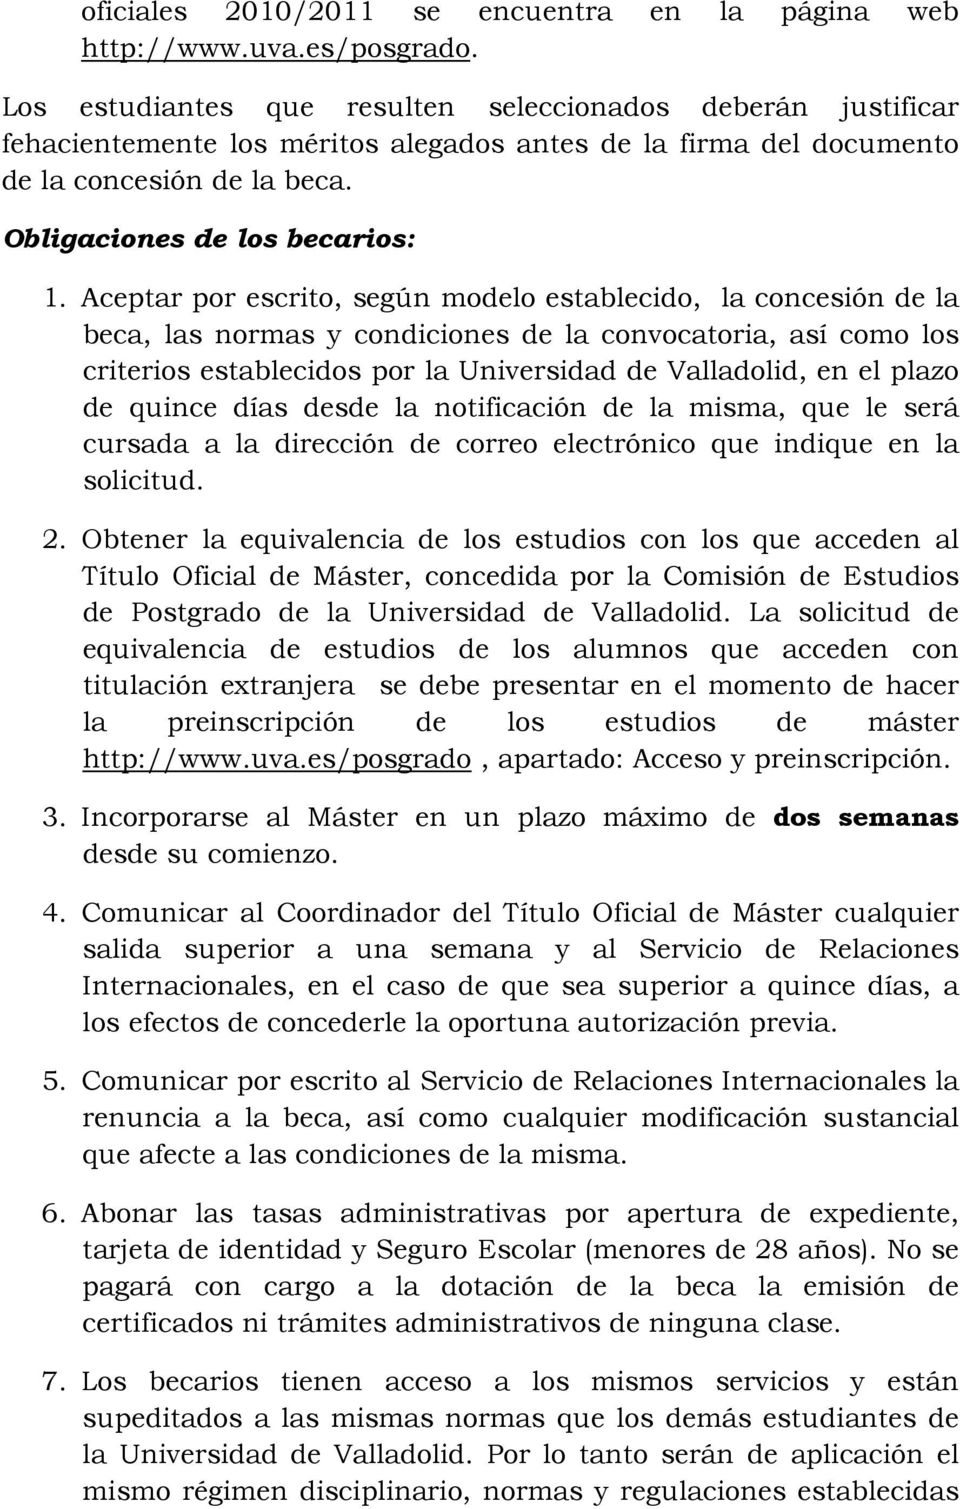 Aceptar por escrito, según modelo establecido, la concesión de la beca, las normas y condiciones de la convocatoria, así como los criterios establecidos por la Universidad de Valladolid, en el plazo